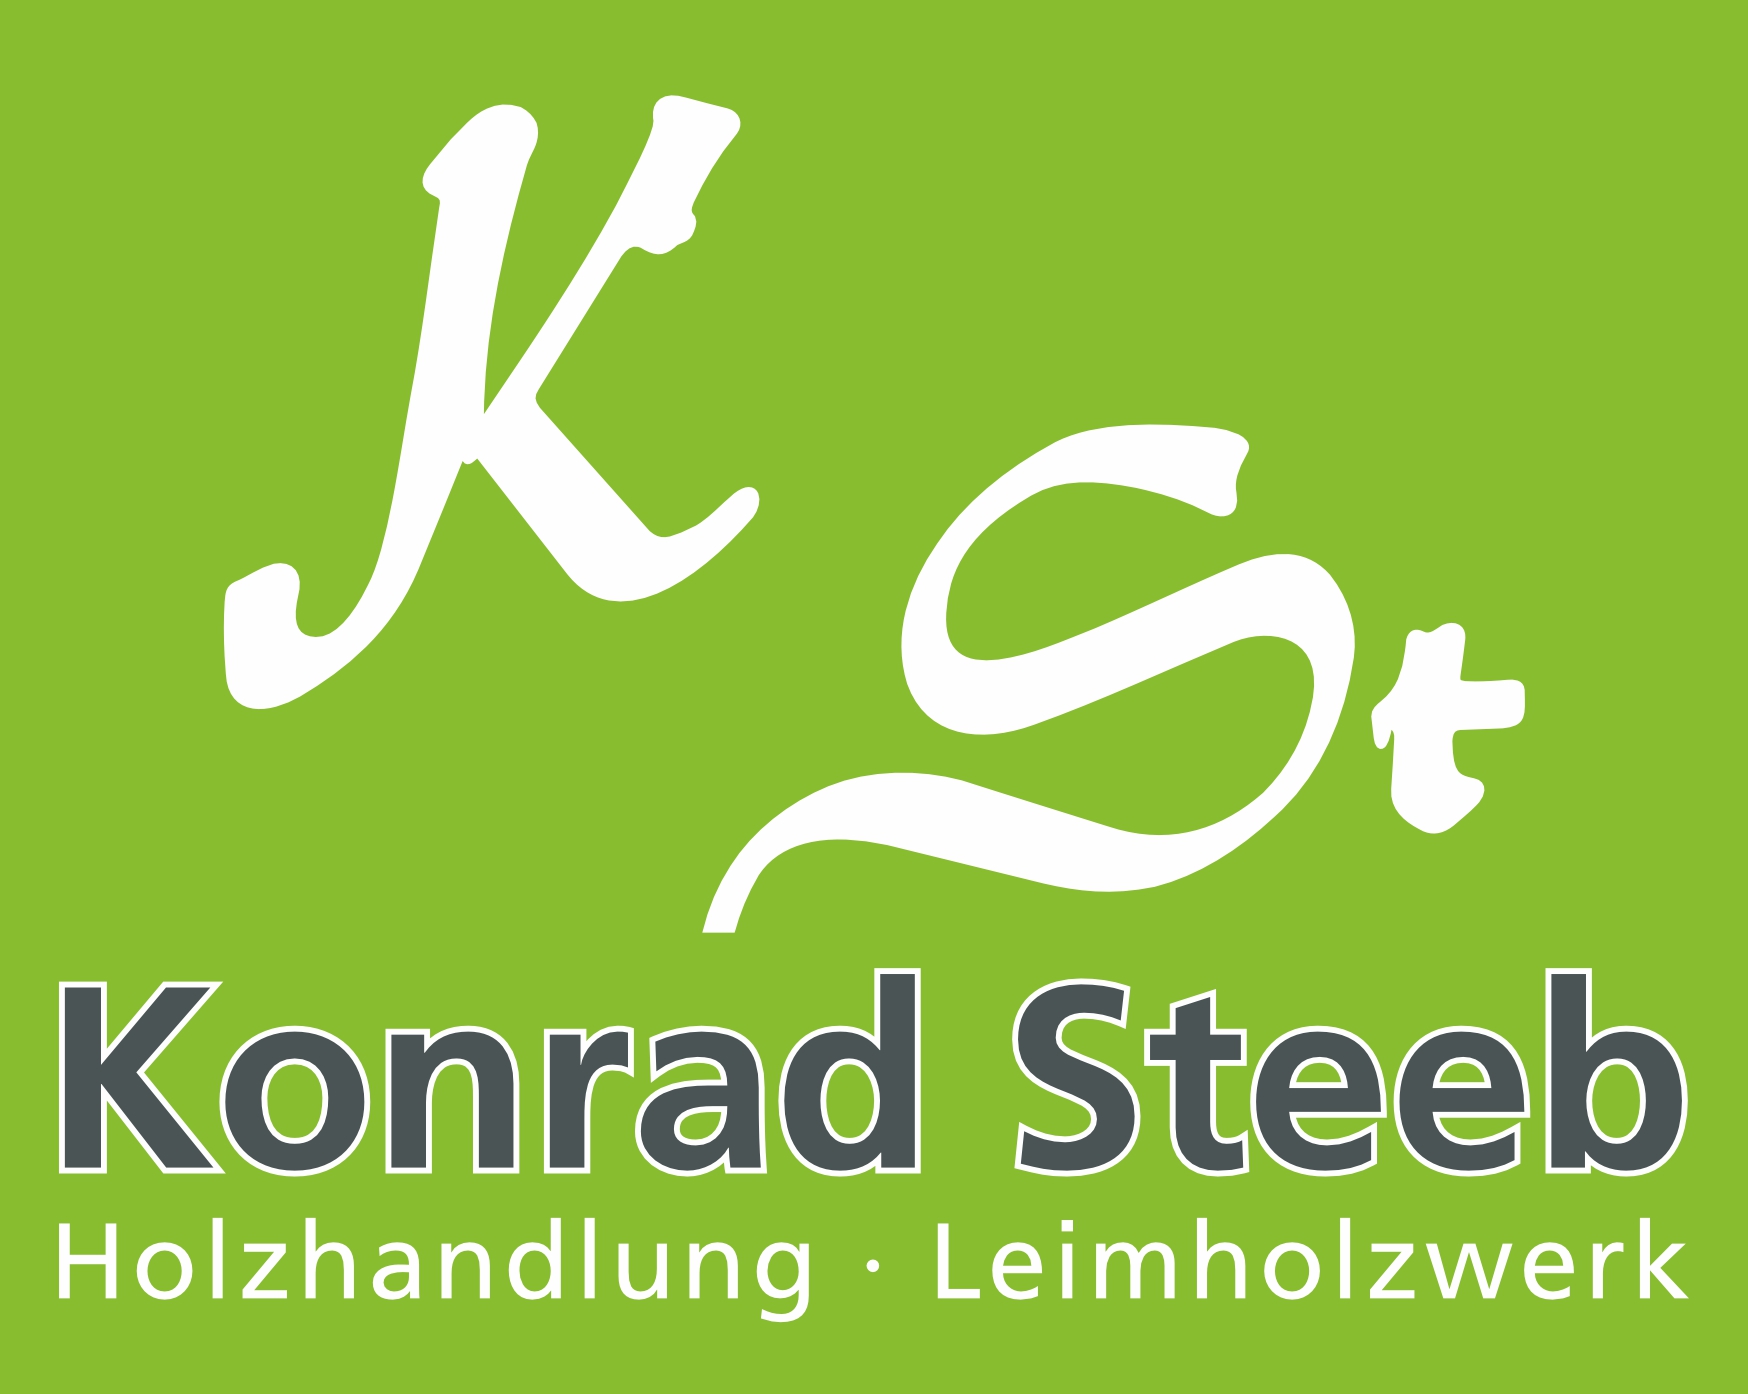 Konrad Steeb GmbH & Co. KG